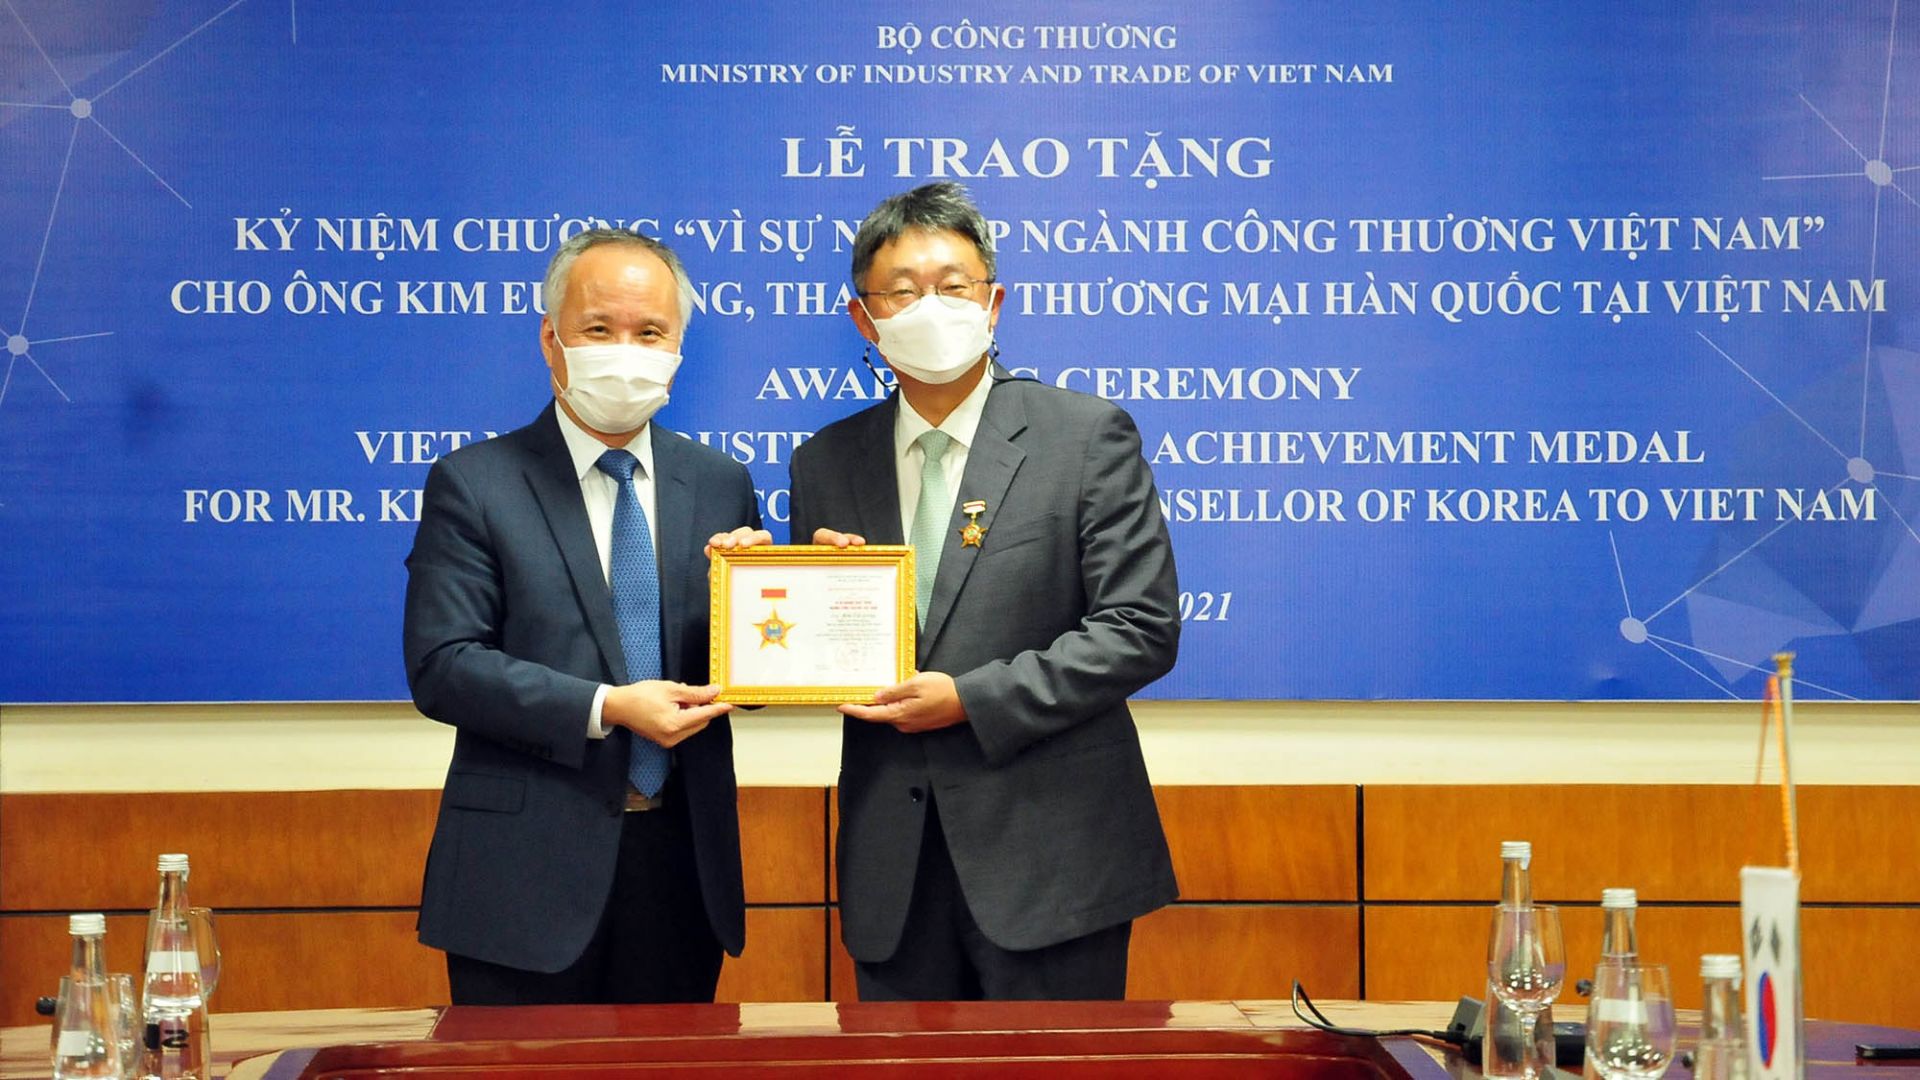 trao tặng Kỷ niệm chương cho Tham tán Thương mại Hàn Quốc tại Việt Nam